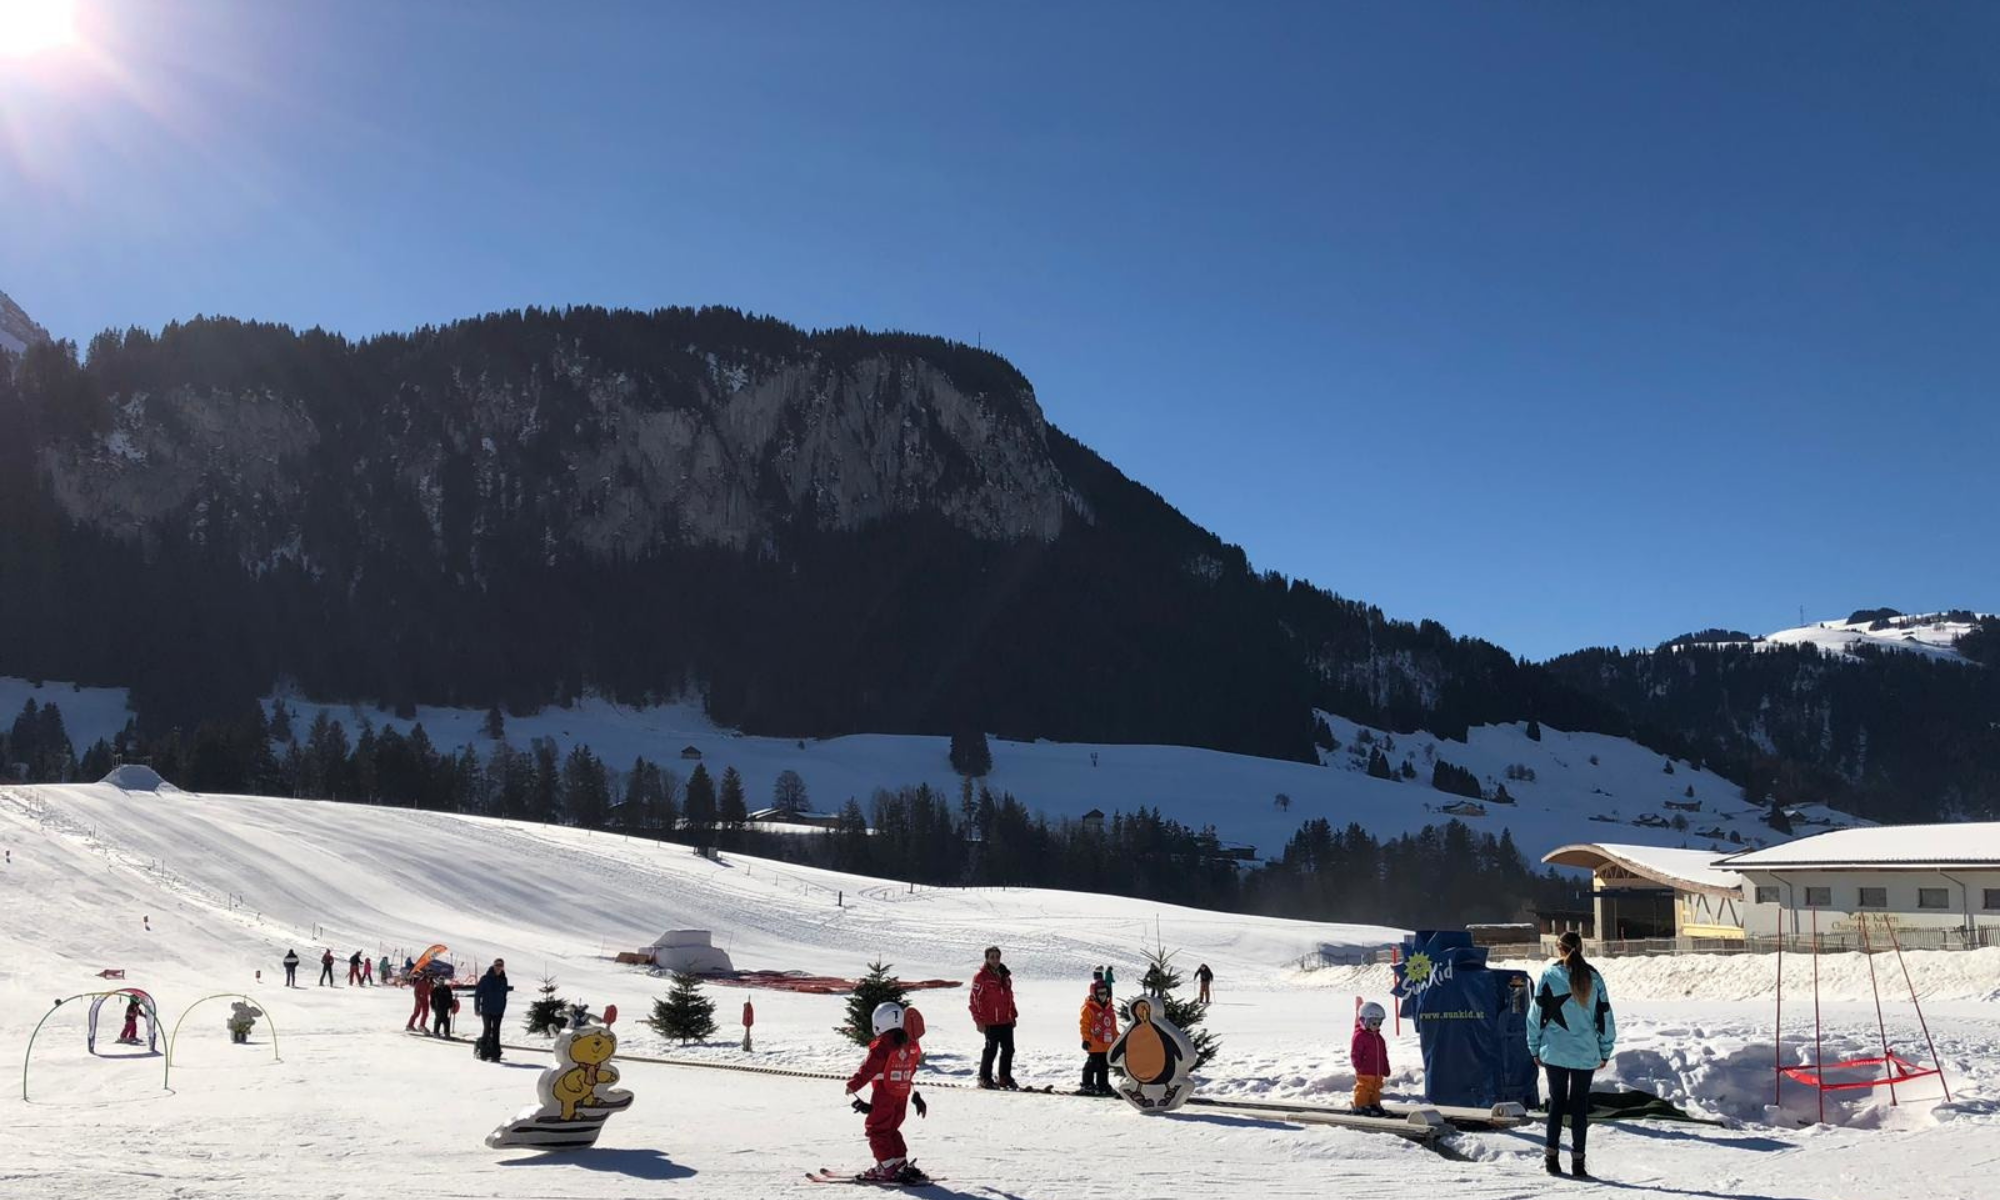 Snow garden, children skiing on the conveyor belt - winter - Château-d'Œx - Pays-d'Enhaut Region